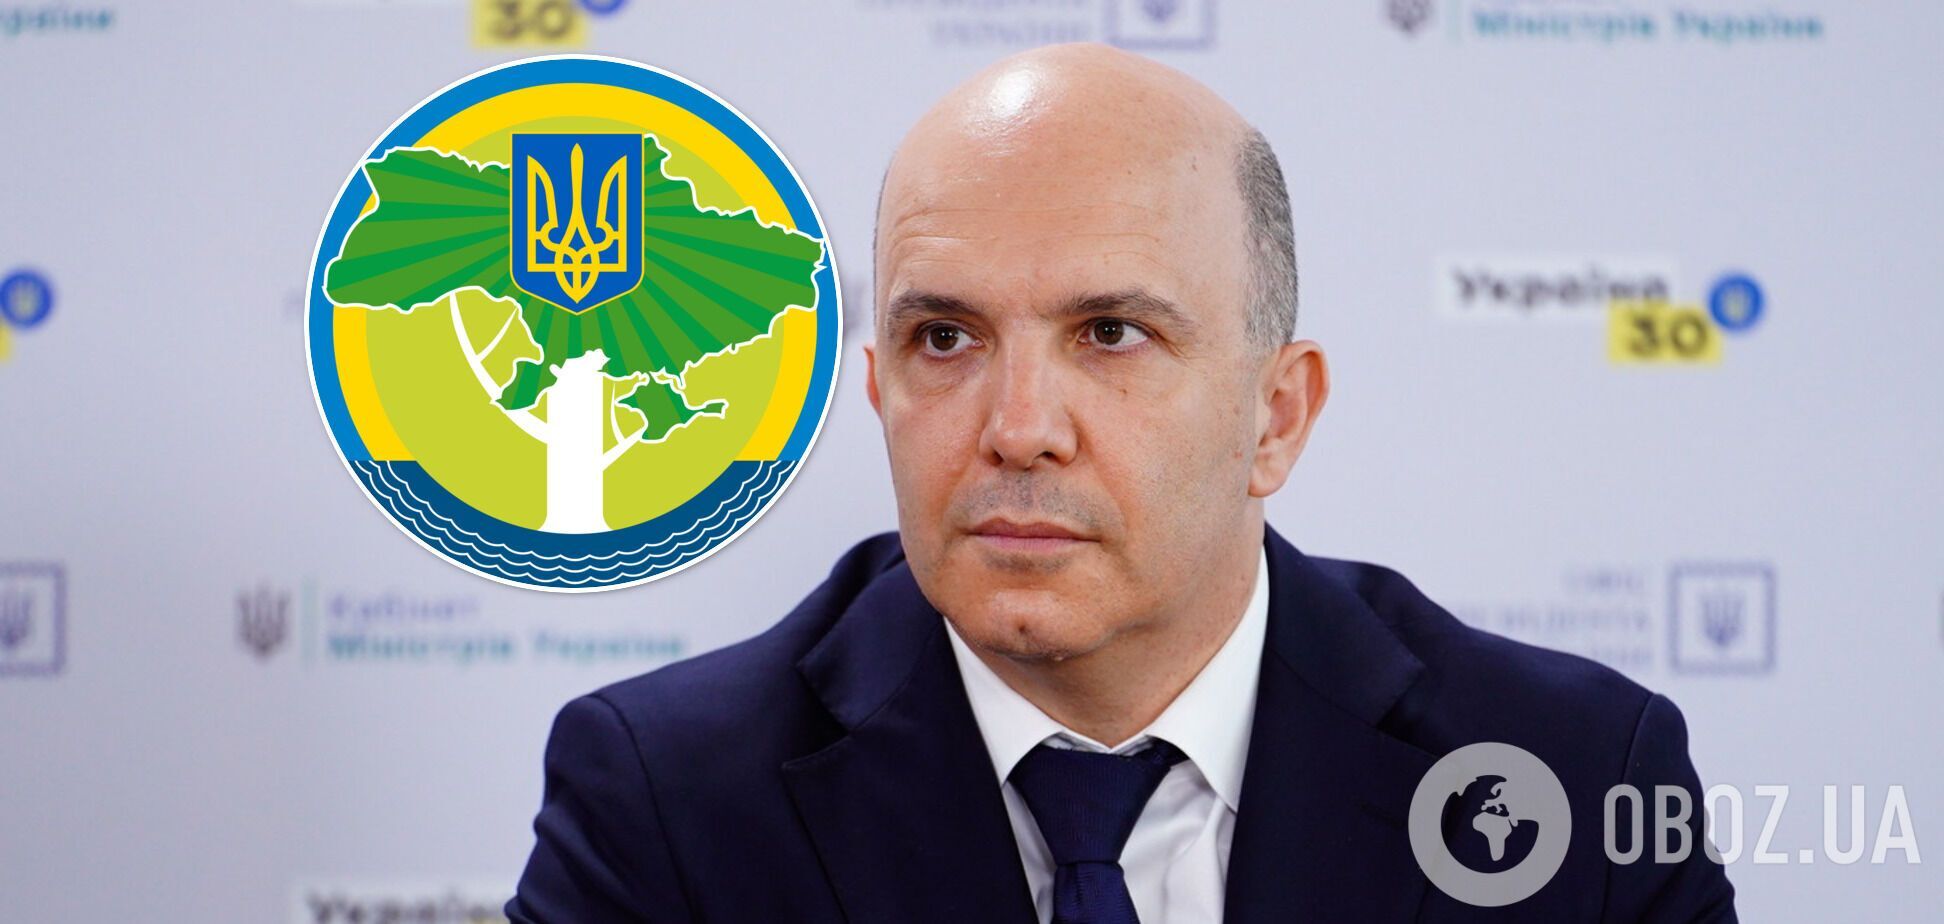 Роман Абрамовский стал министром защиты окружающей среды и природных ресурсов Украины в июне 2020-го